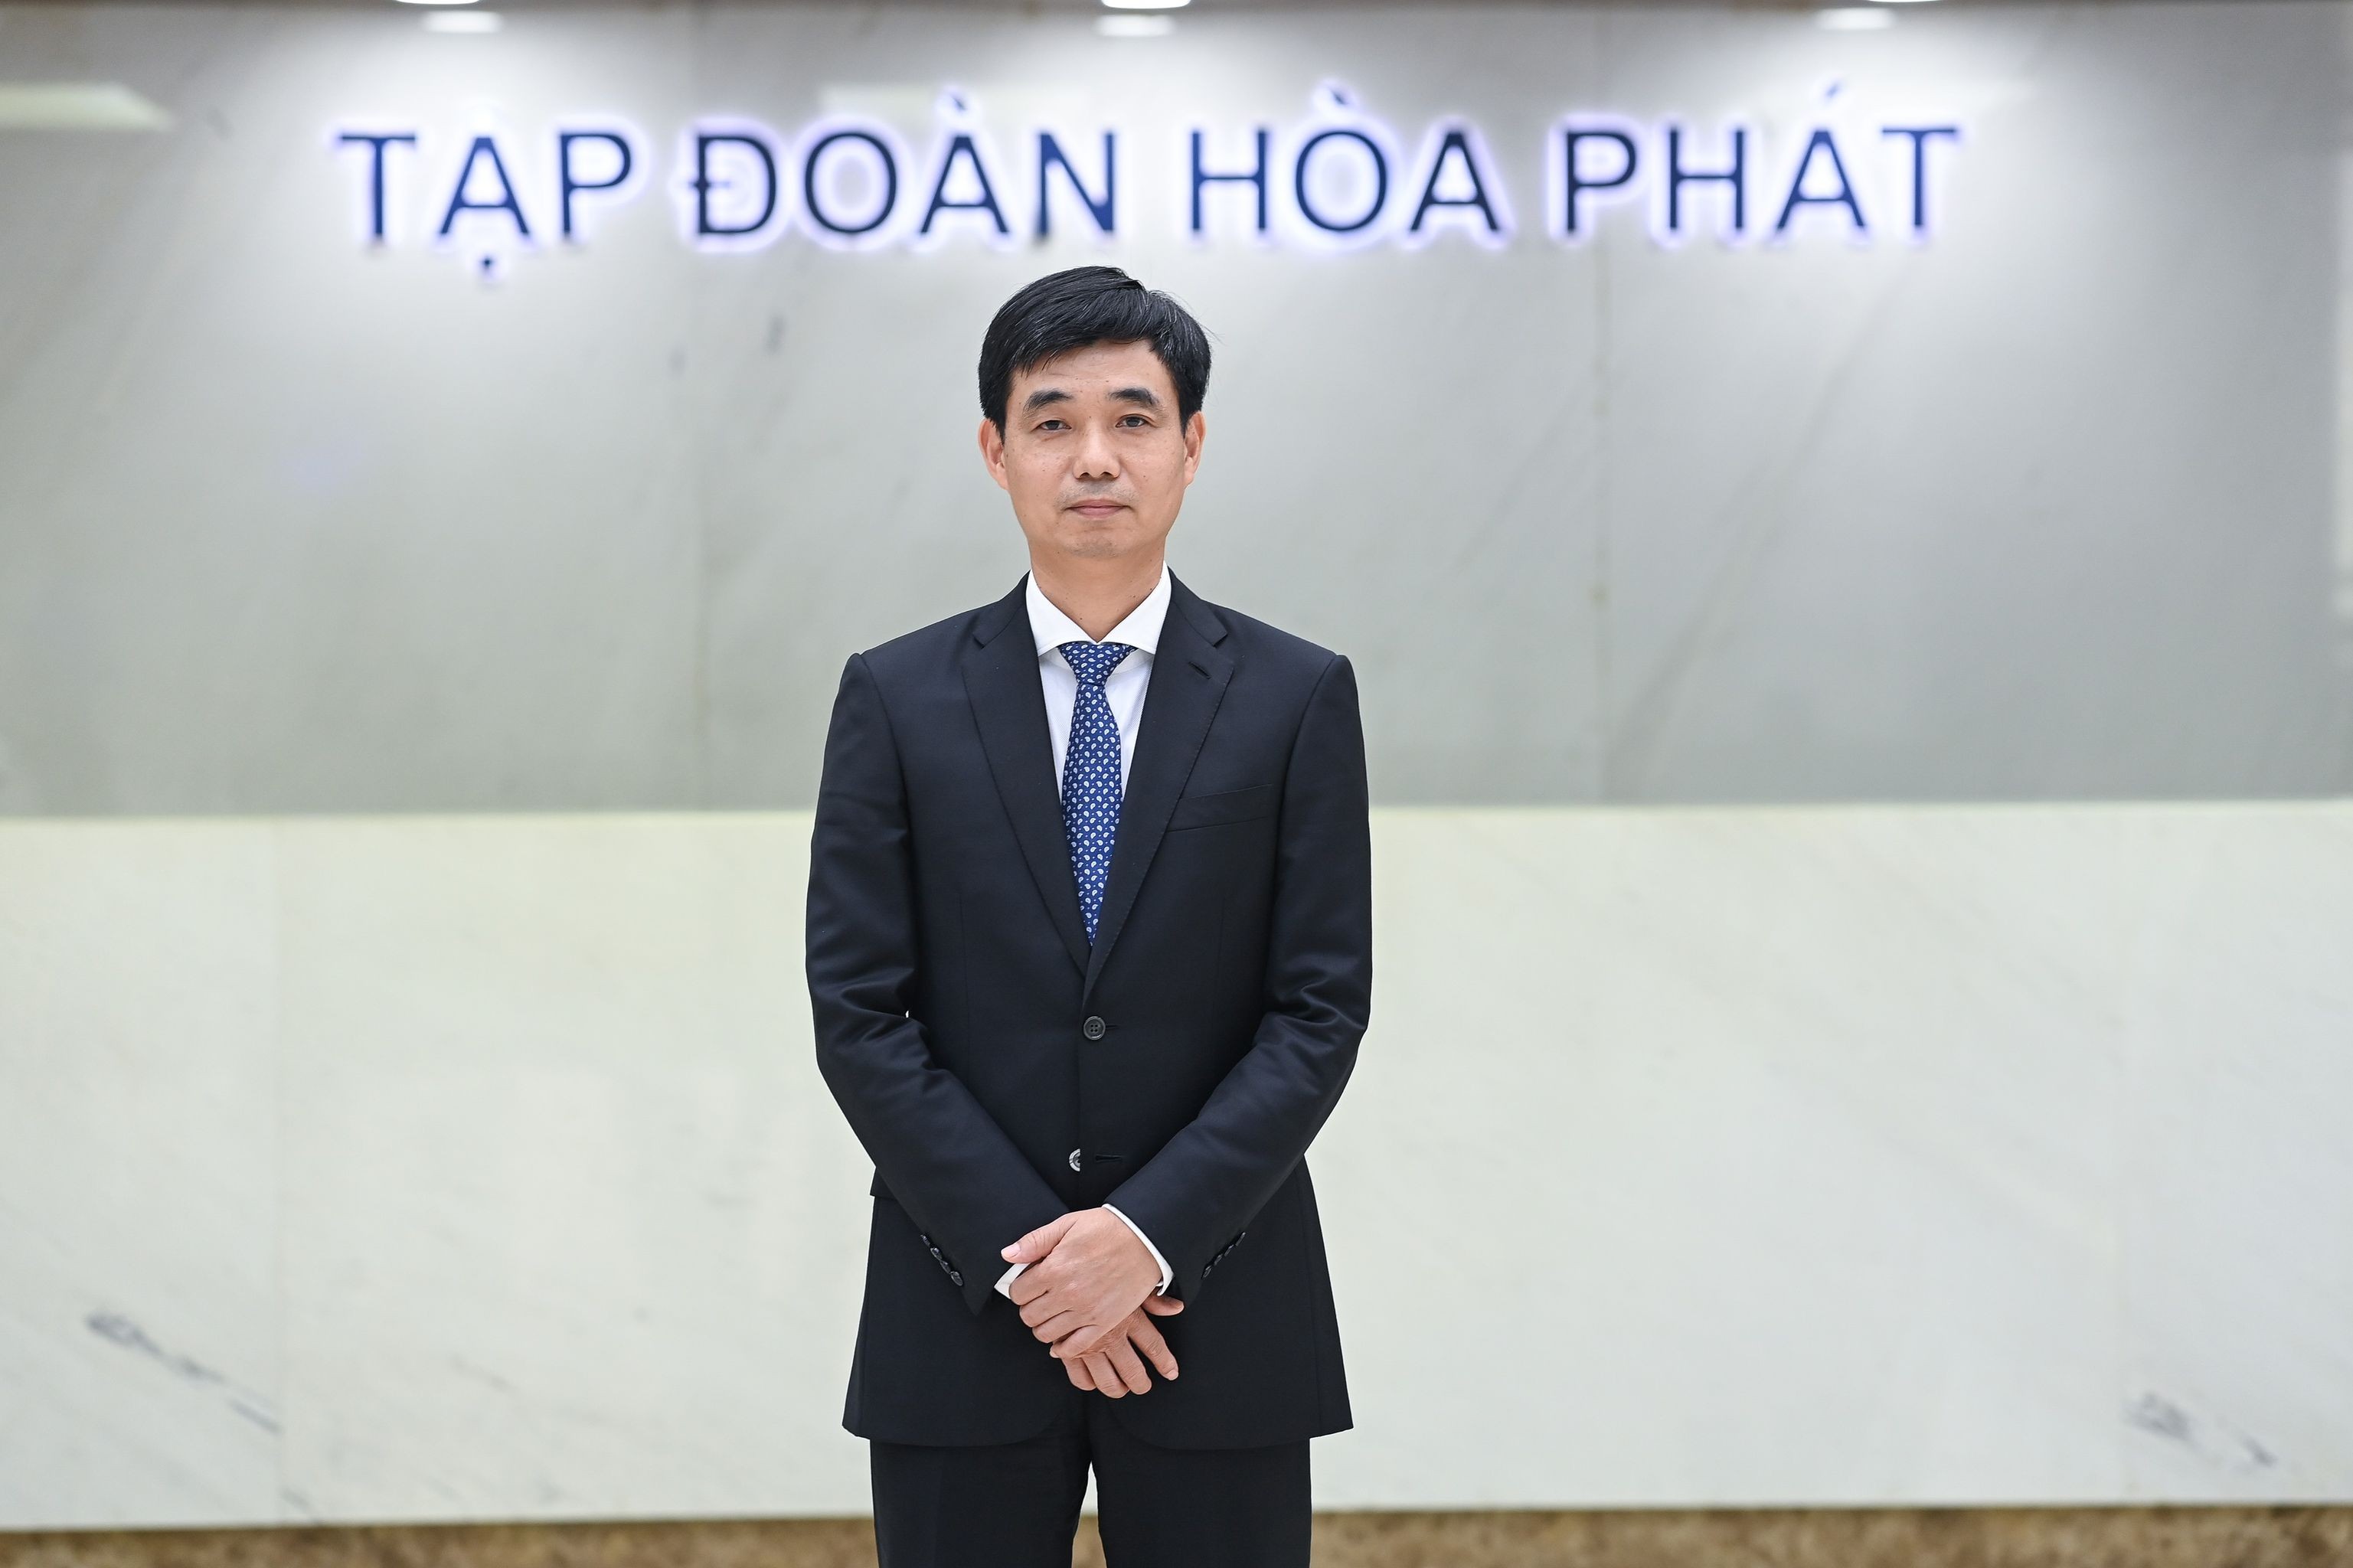 Tập đoàn Hòa Phát bổ nhiệm ông Nguyễn Việt Thắng giữ chức vụ Tổng Giám đốc 1